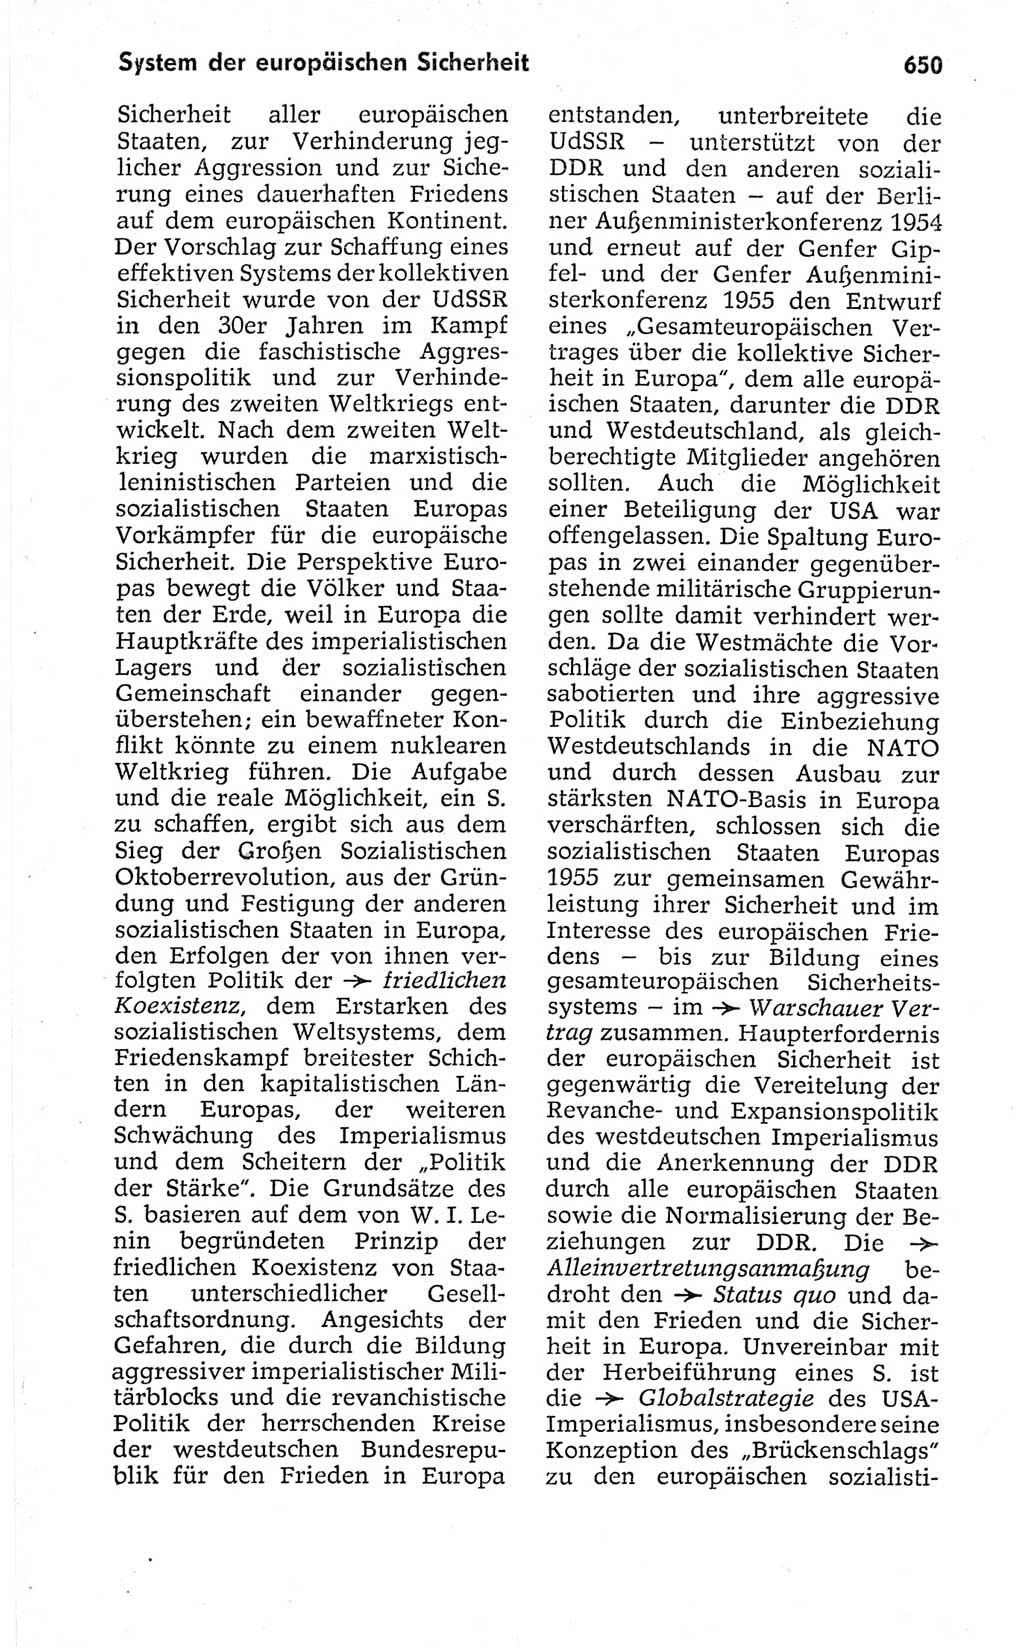 Kleines politisches Wörterbuch [Deutsche Demokratische Republik (DDR)] 1967, Seite 650 (Kl. pol. Wb. DDR 1967, S. 650)